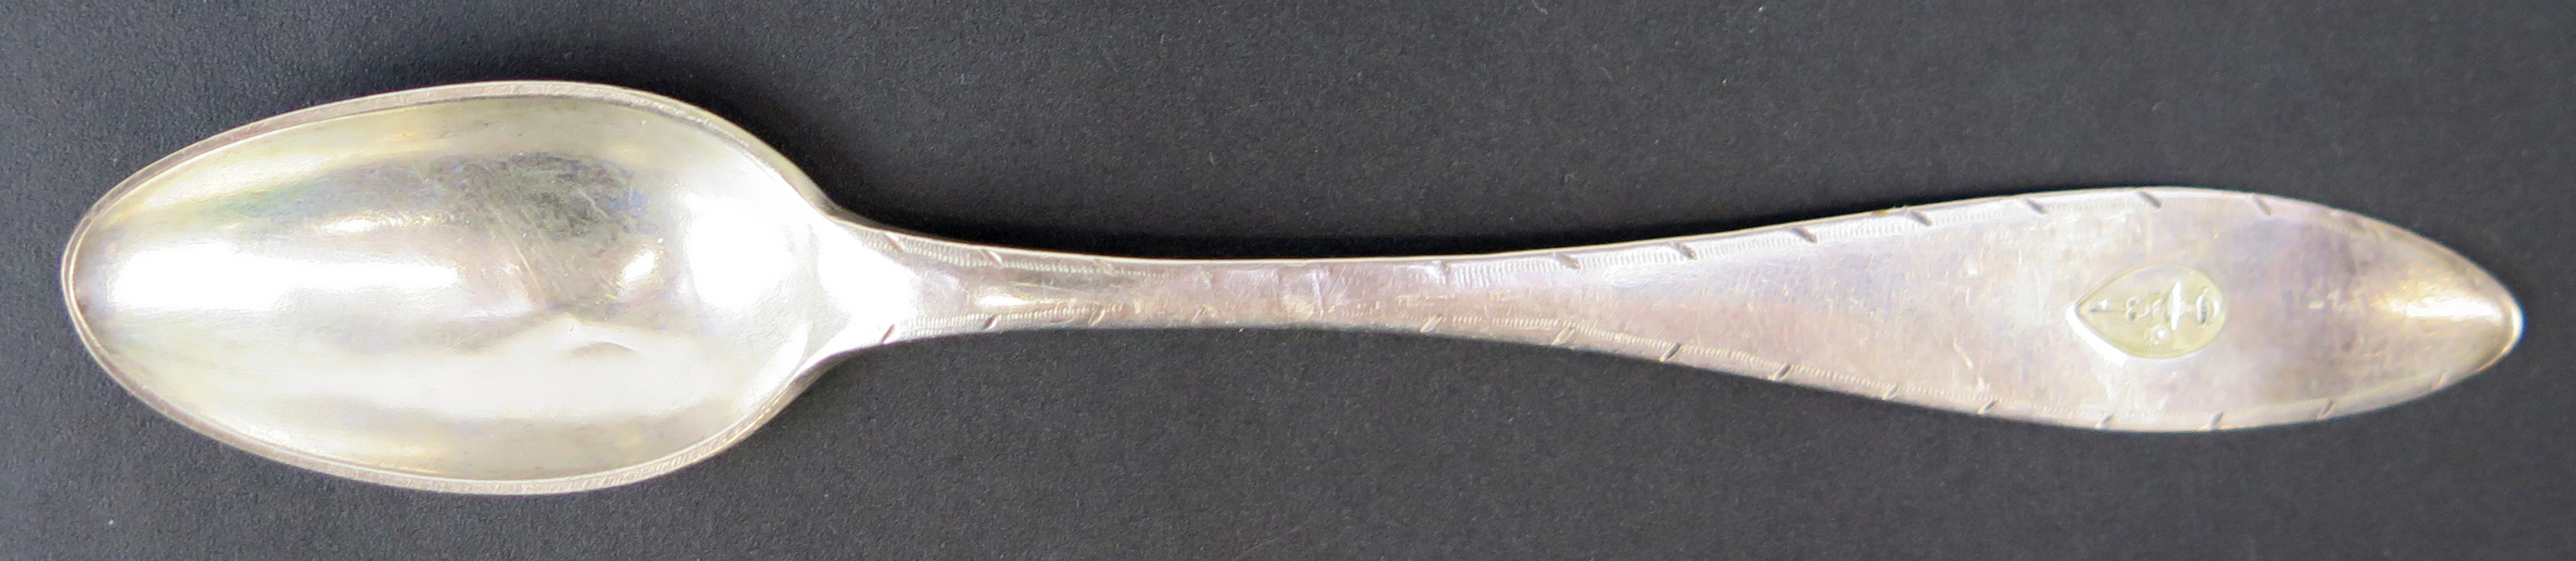 Thesked, silver, spetsig modell, otydliga svenska stämplar, 1800-tal, vapenstämpel för adliga ätten Stiernstam, l 14 cm, lagning_31002a_lg.jpeg